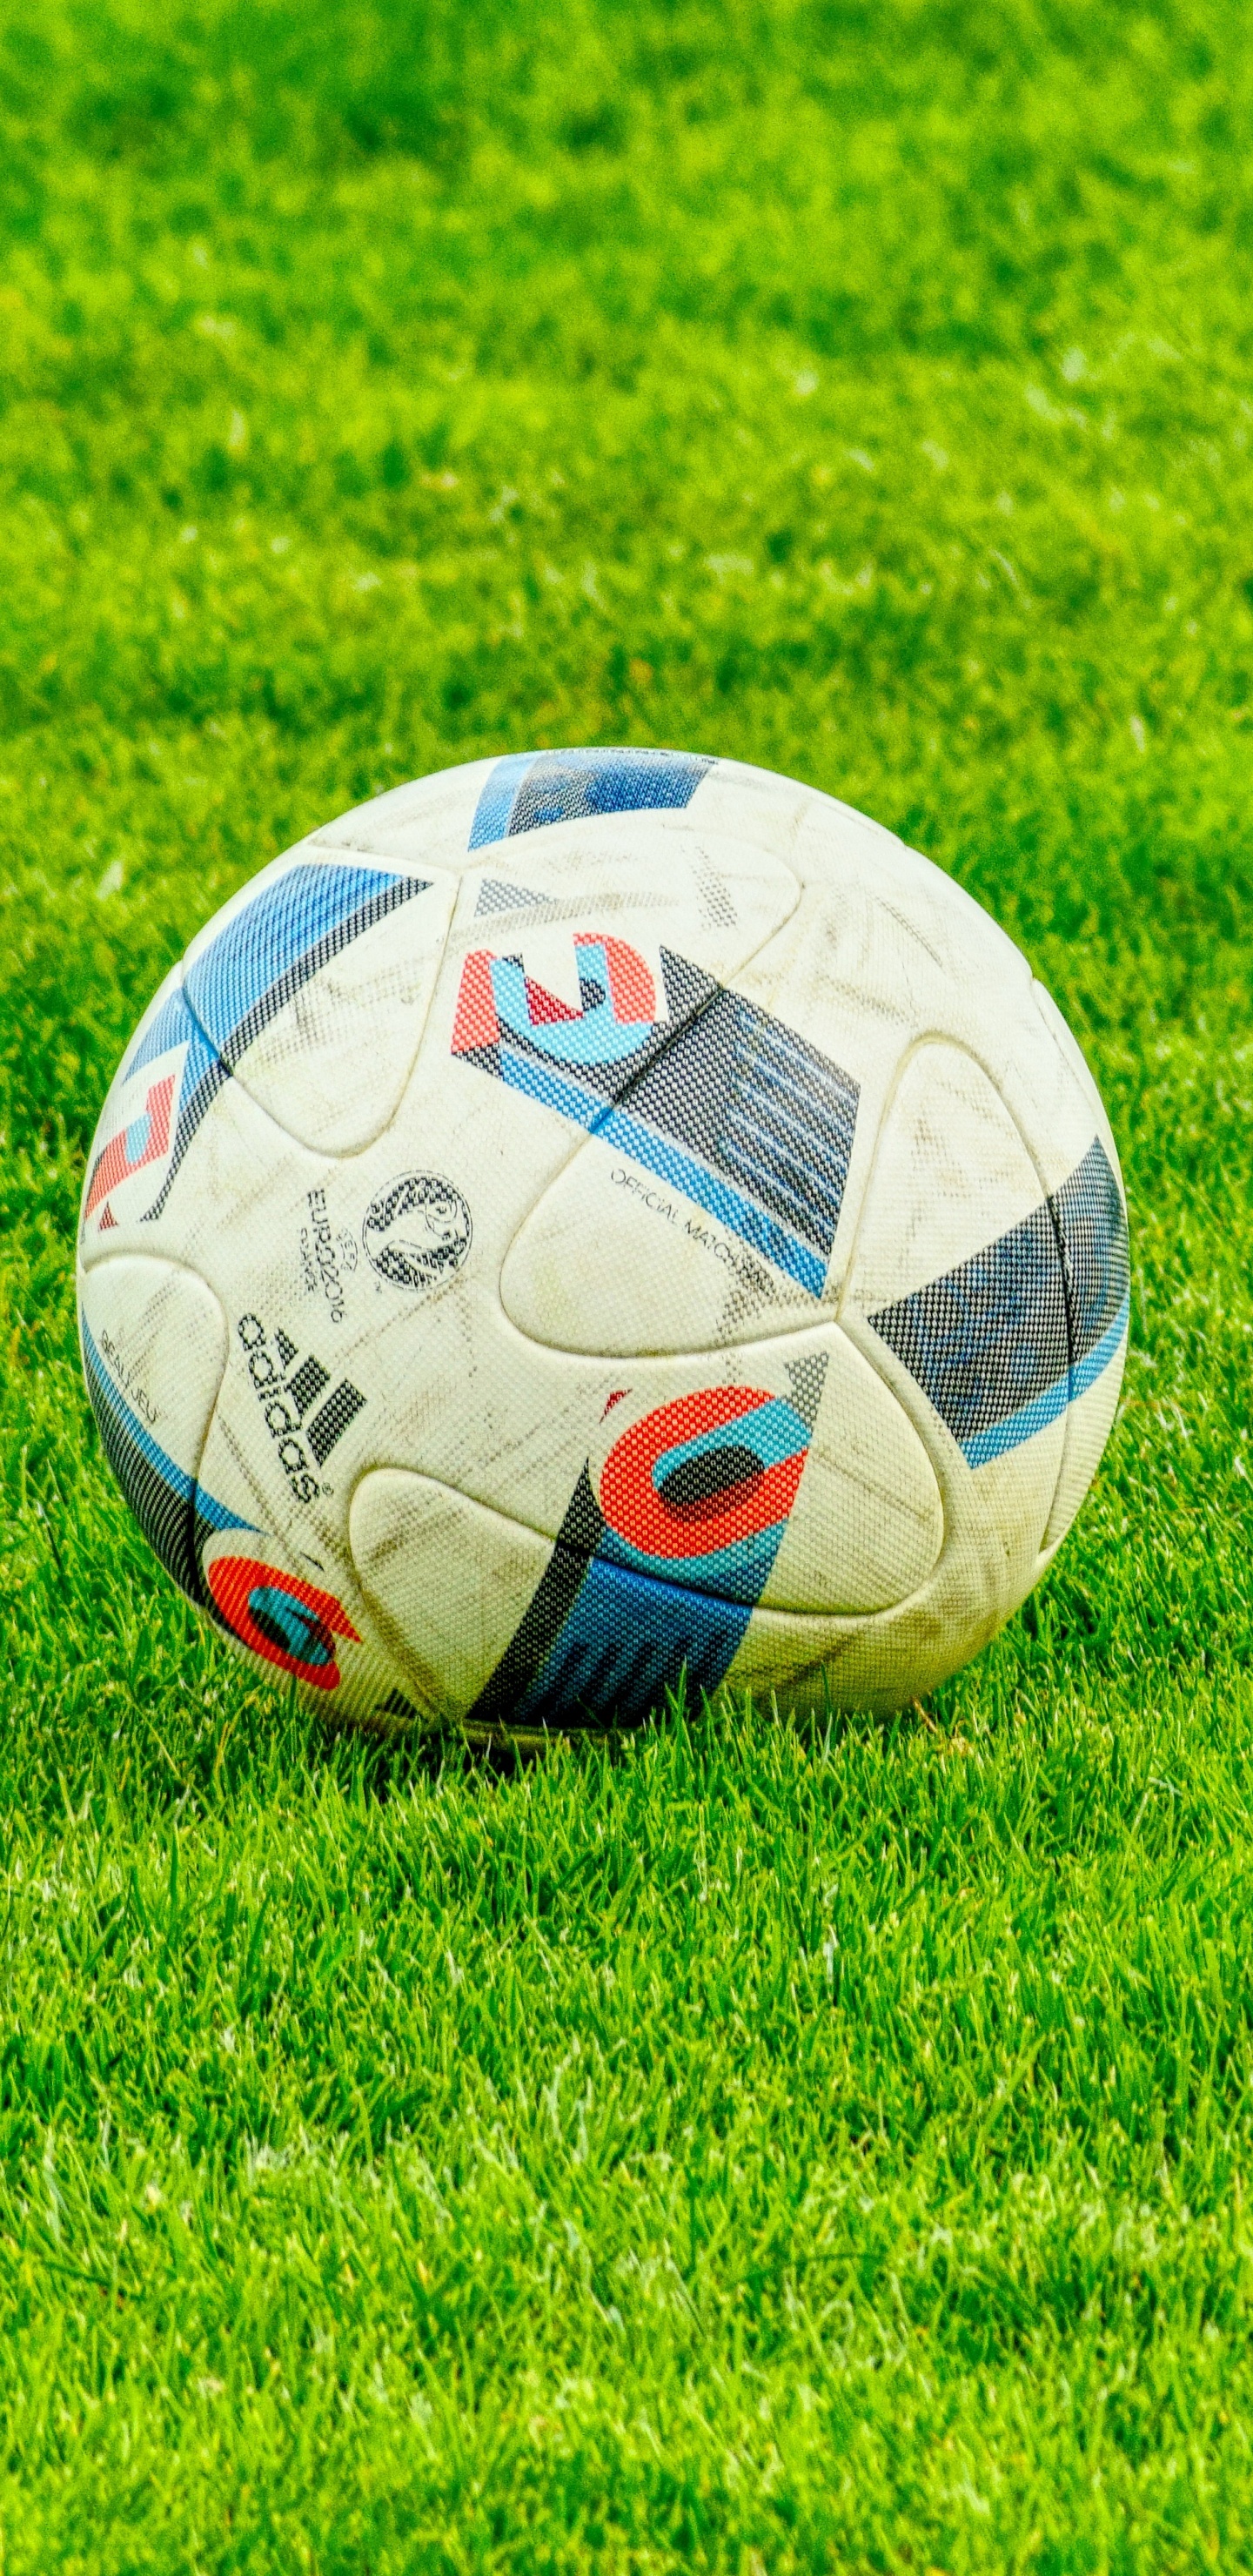 足球, 球, 草, 国际足球的规则, 气球 壁纸 1440x2960 允许